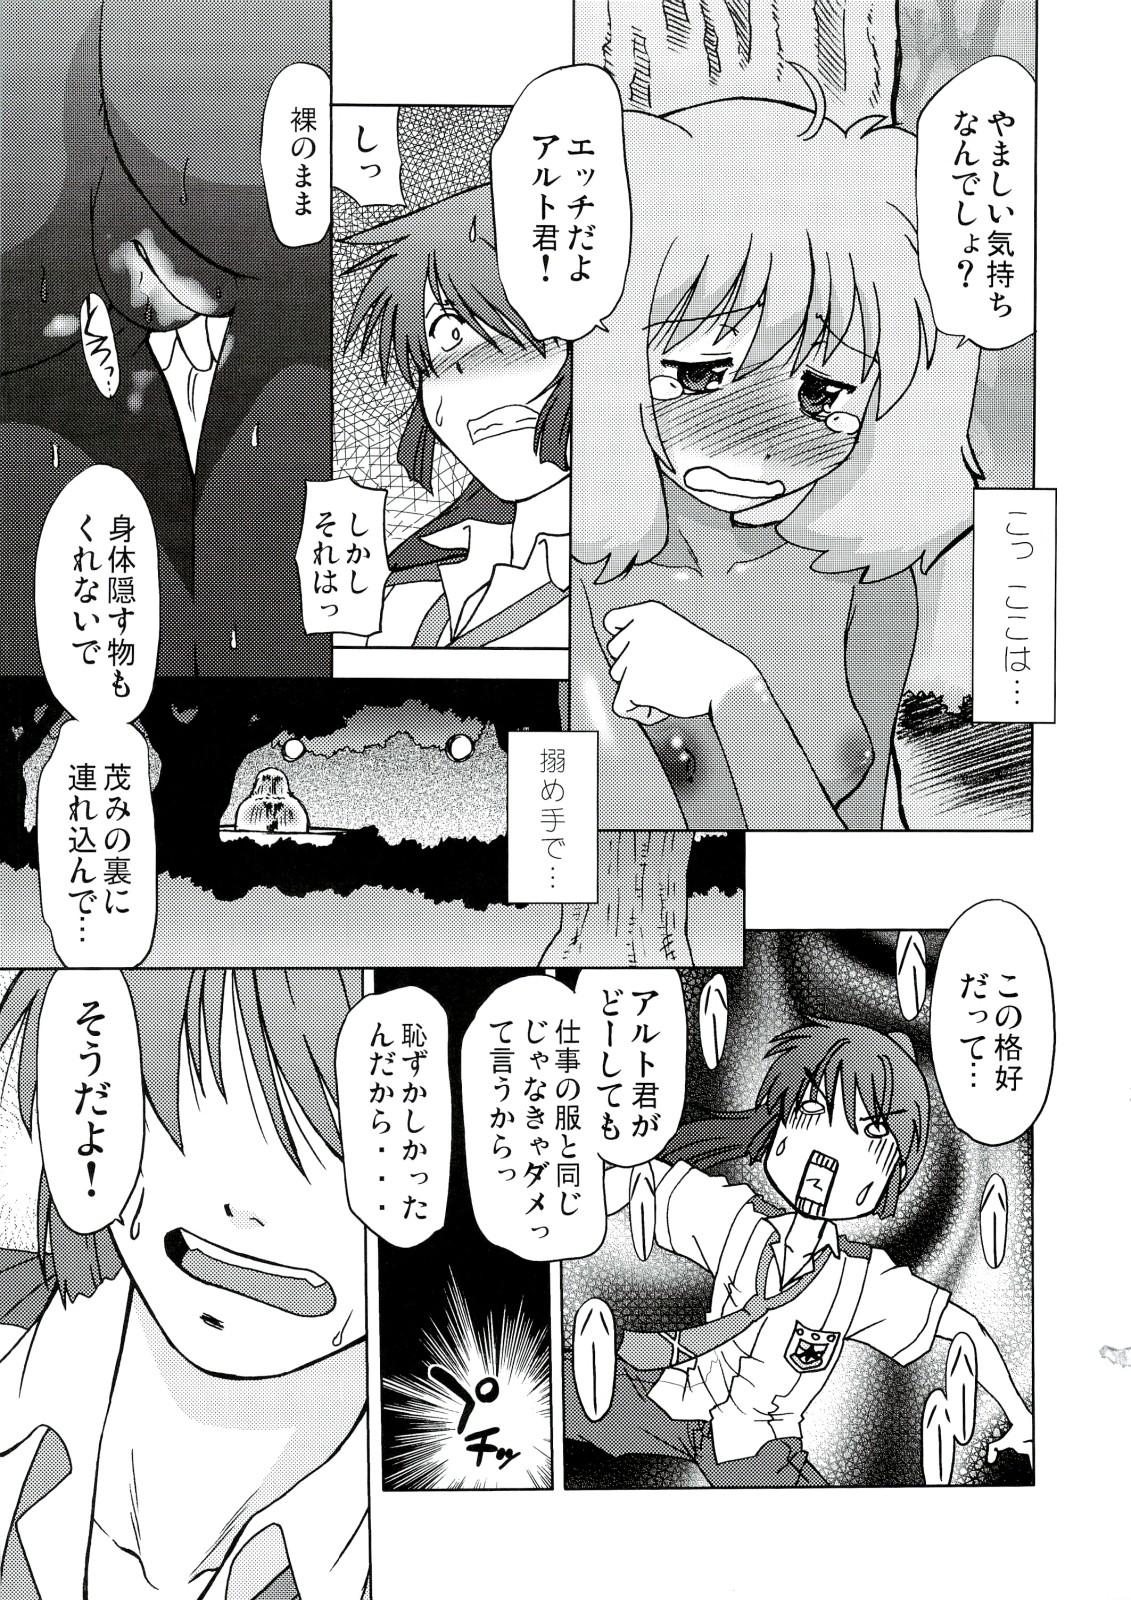 Rubbing Kishou Tenketsu 6 - Macross frontier Dick Sucking - Page 14